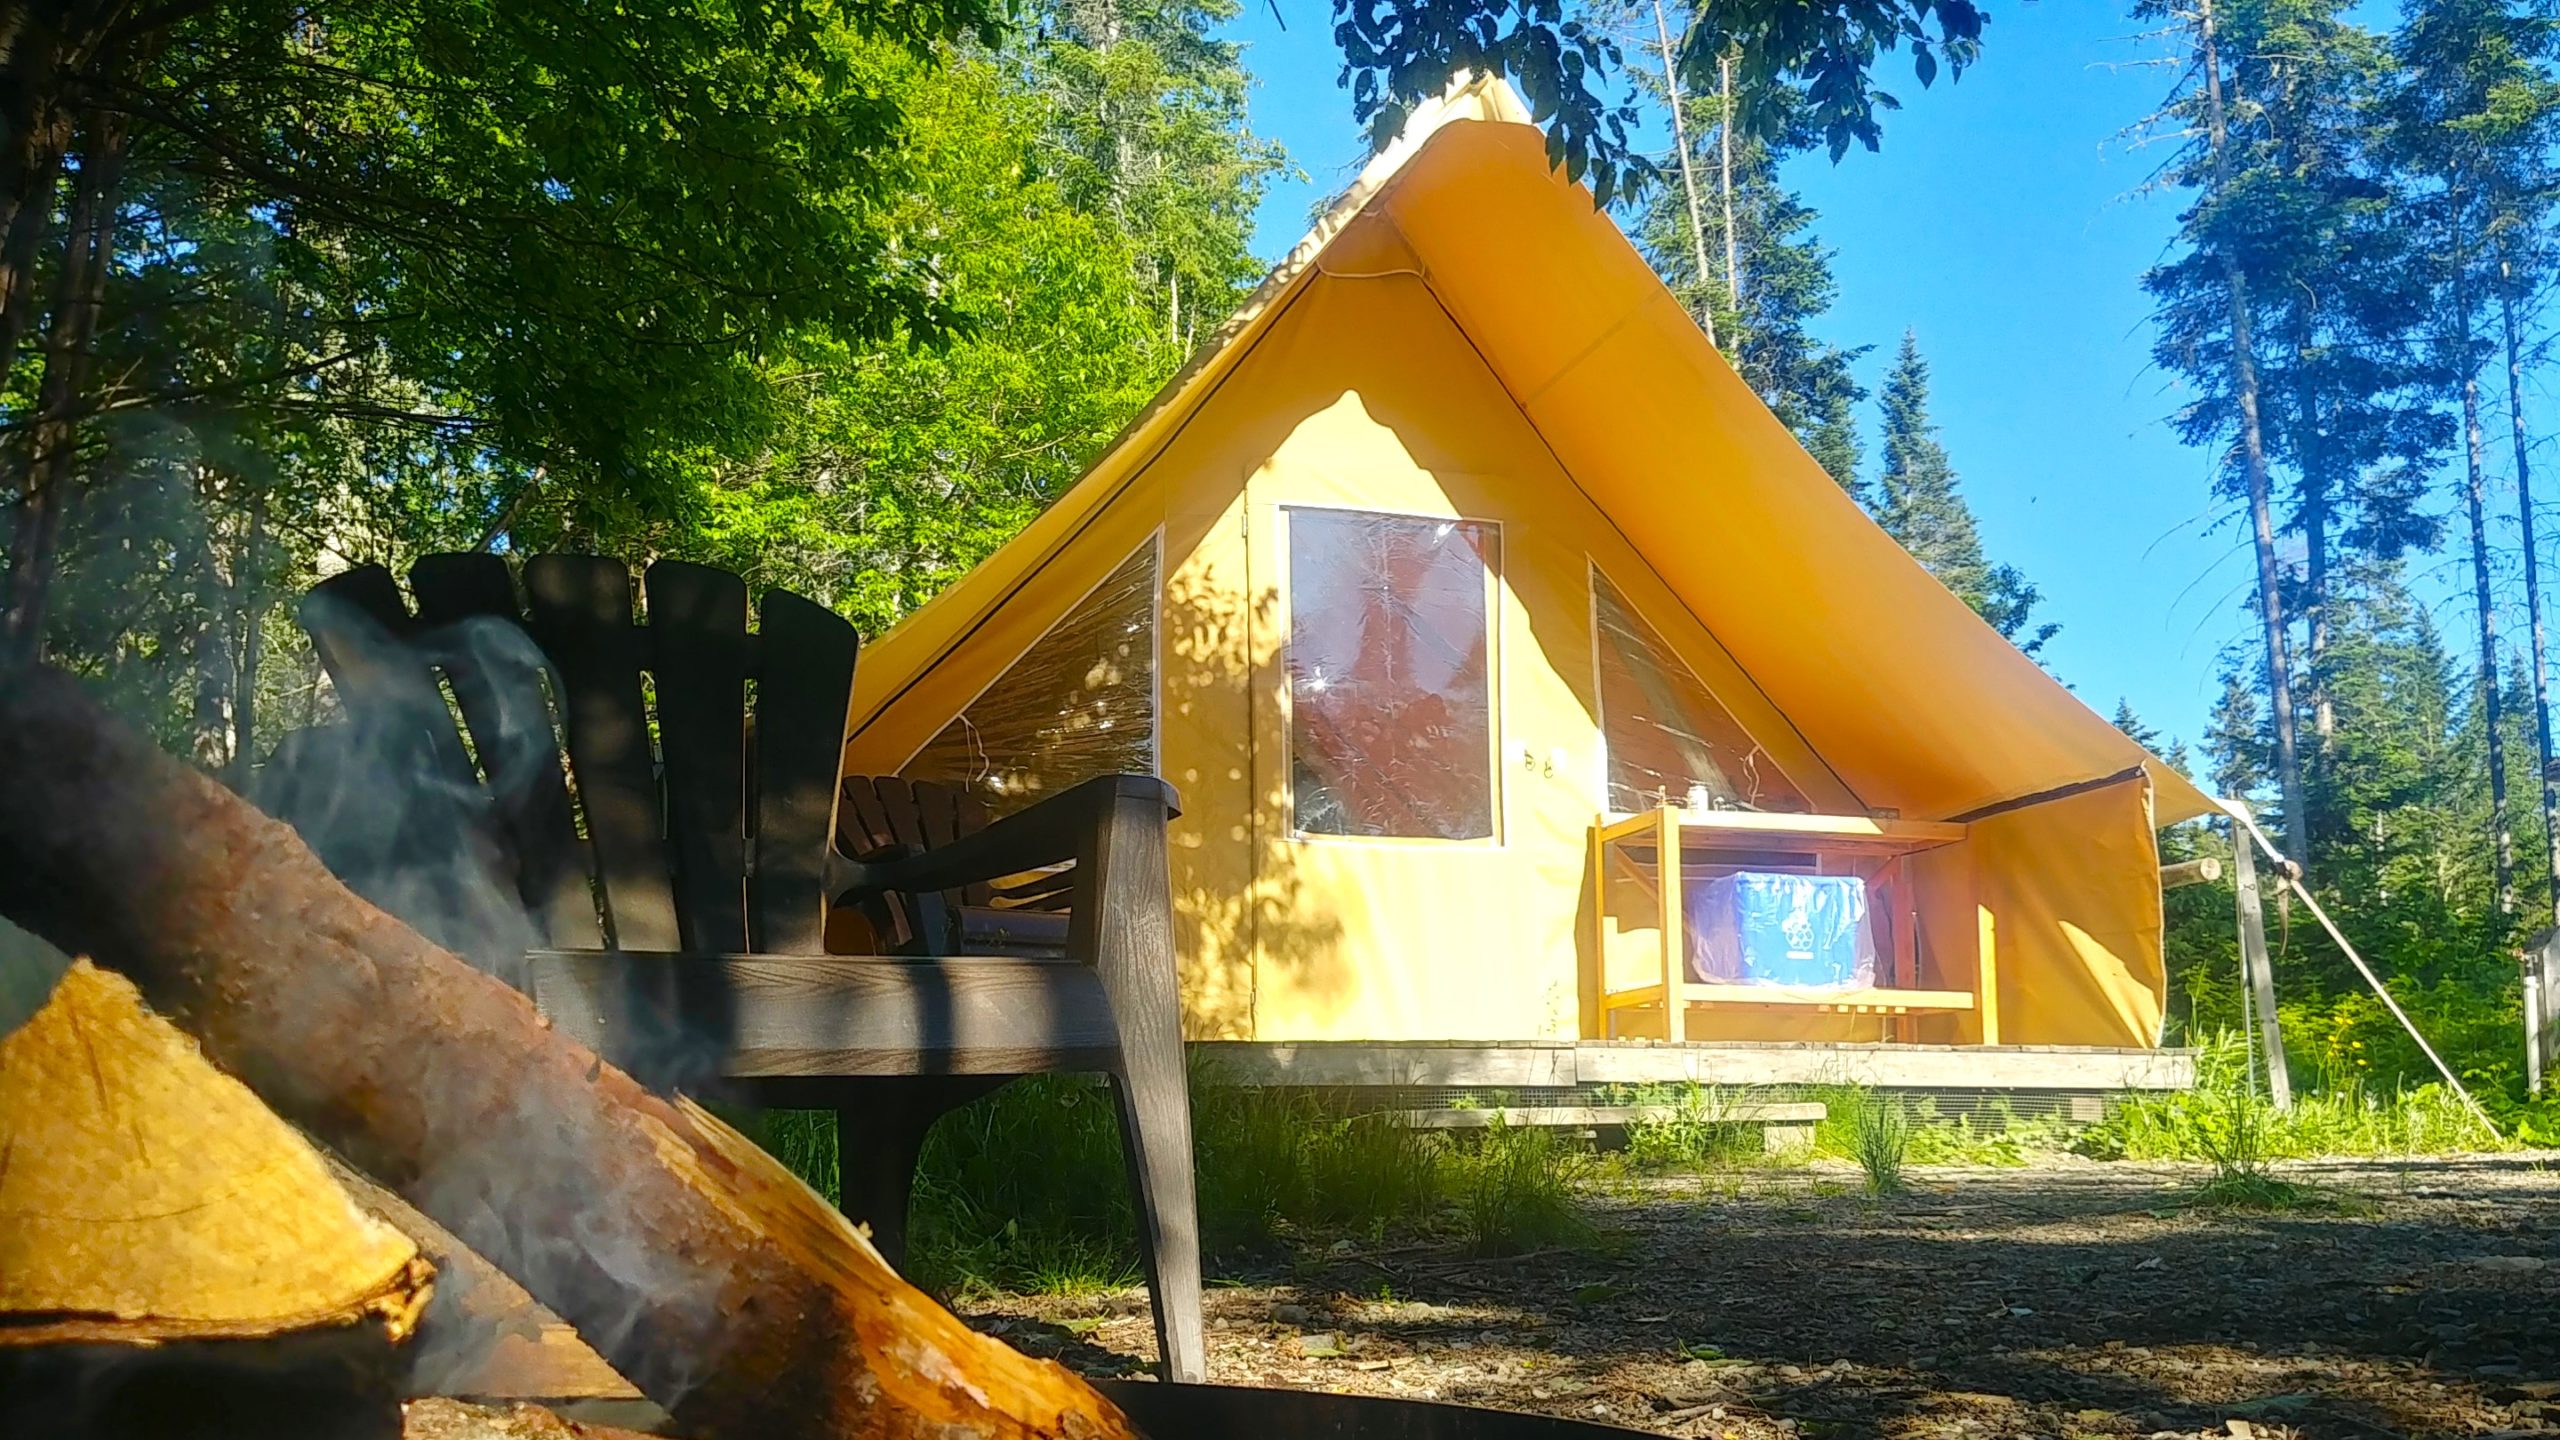 Parc national de Lac-Temiscouata prêt-à-camper glamping où dormir